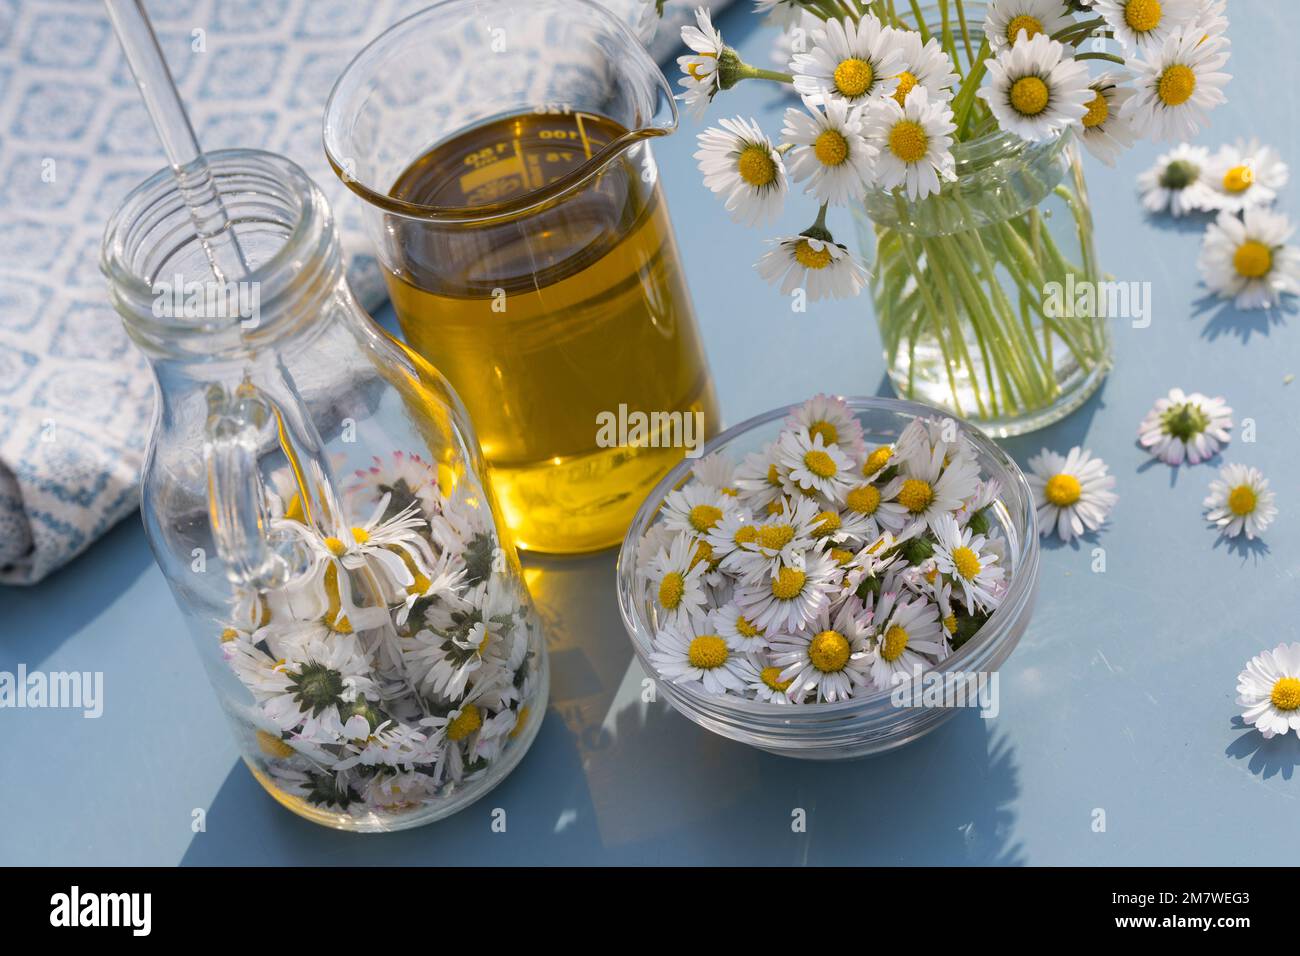 Gänseblümchen-Öl, Gänseblümchenöl, Blüten vom Gänseblümchen werden in Öl eingelegt, ausgezogen, Auszug aus Gänseblümchen-Blüten, Ölauszug, Heilöl, Aus Foto Stock